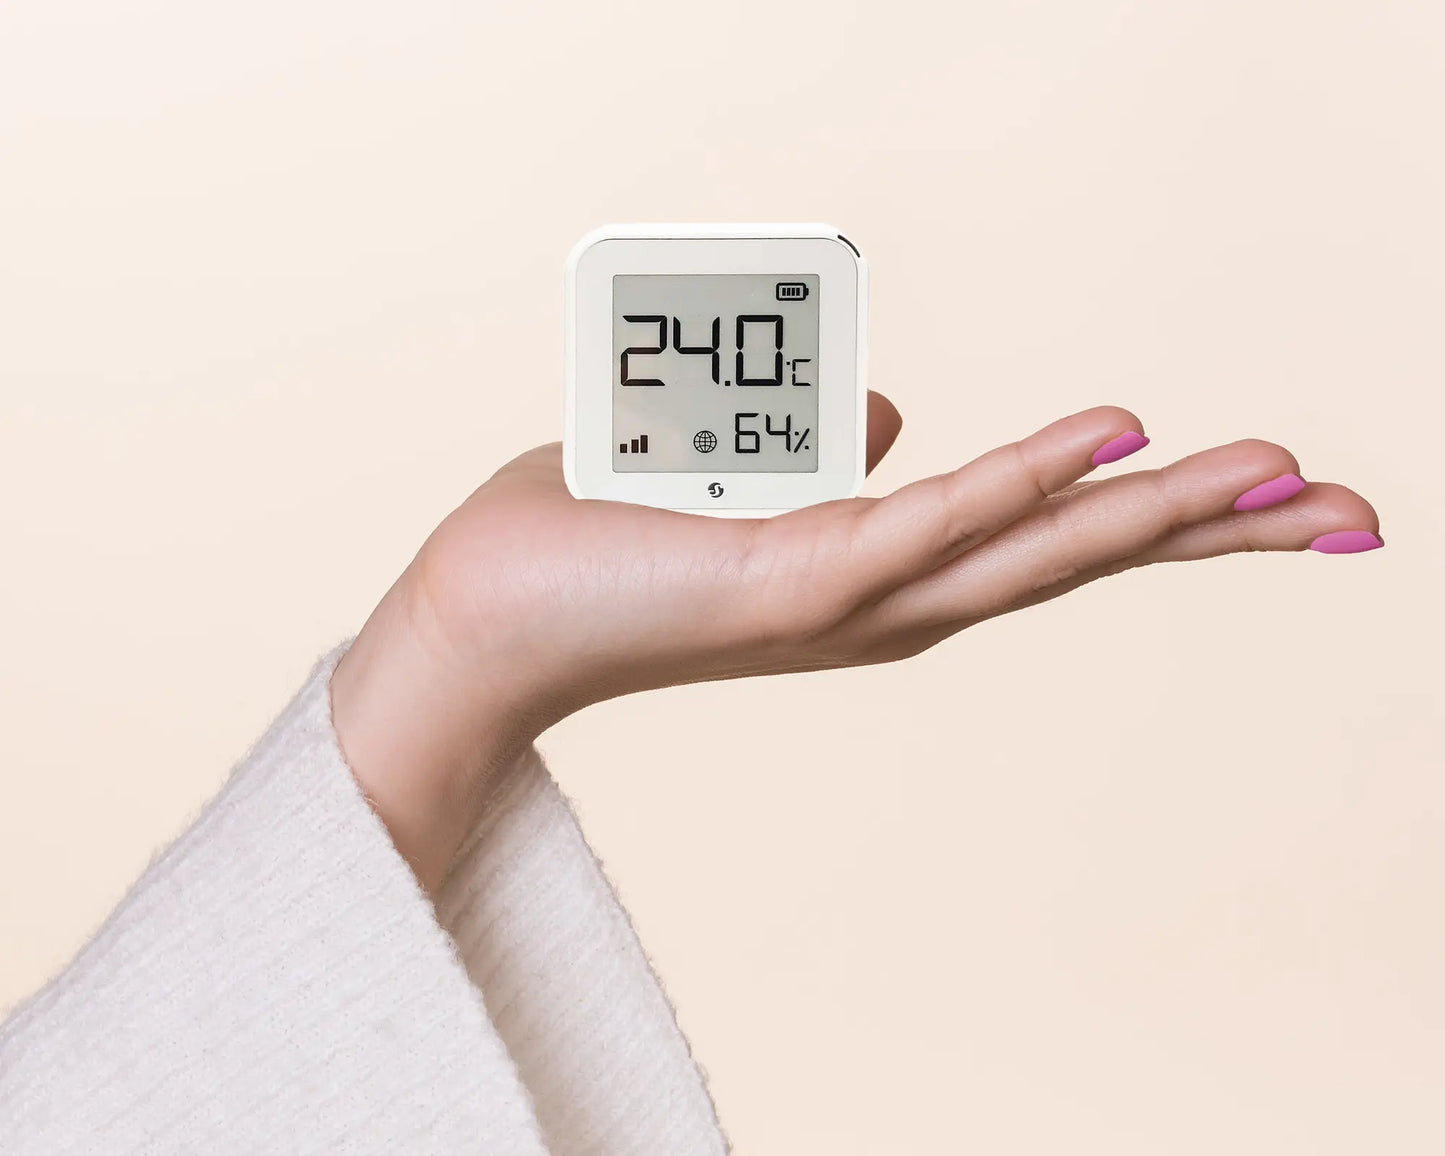 Smart Display 24 Inch met temperatuur- en vochtigheidssensor 